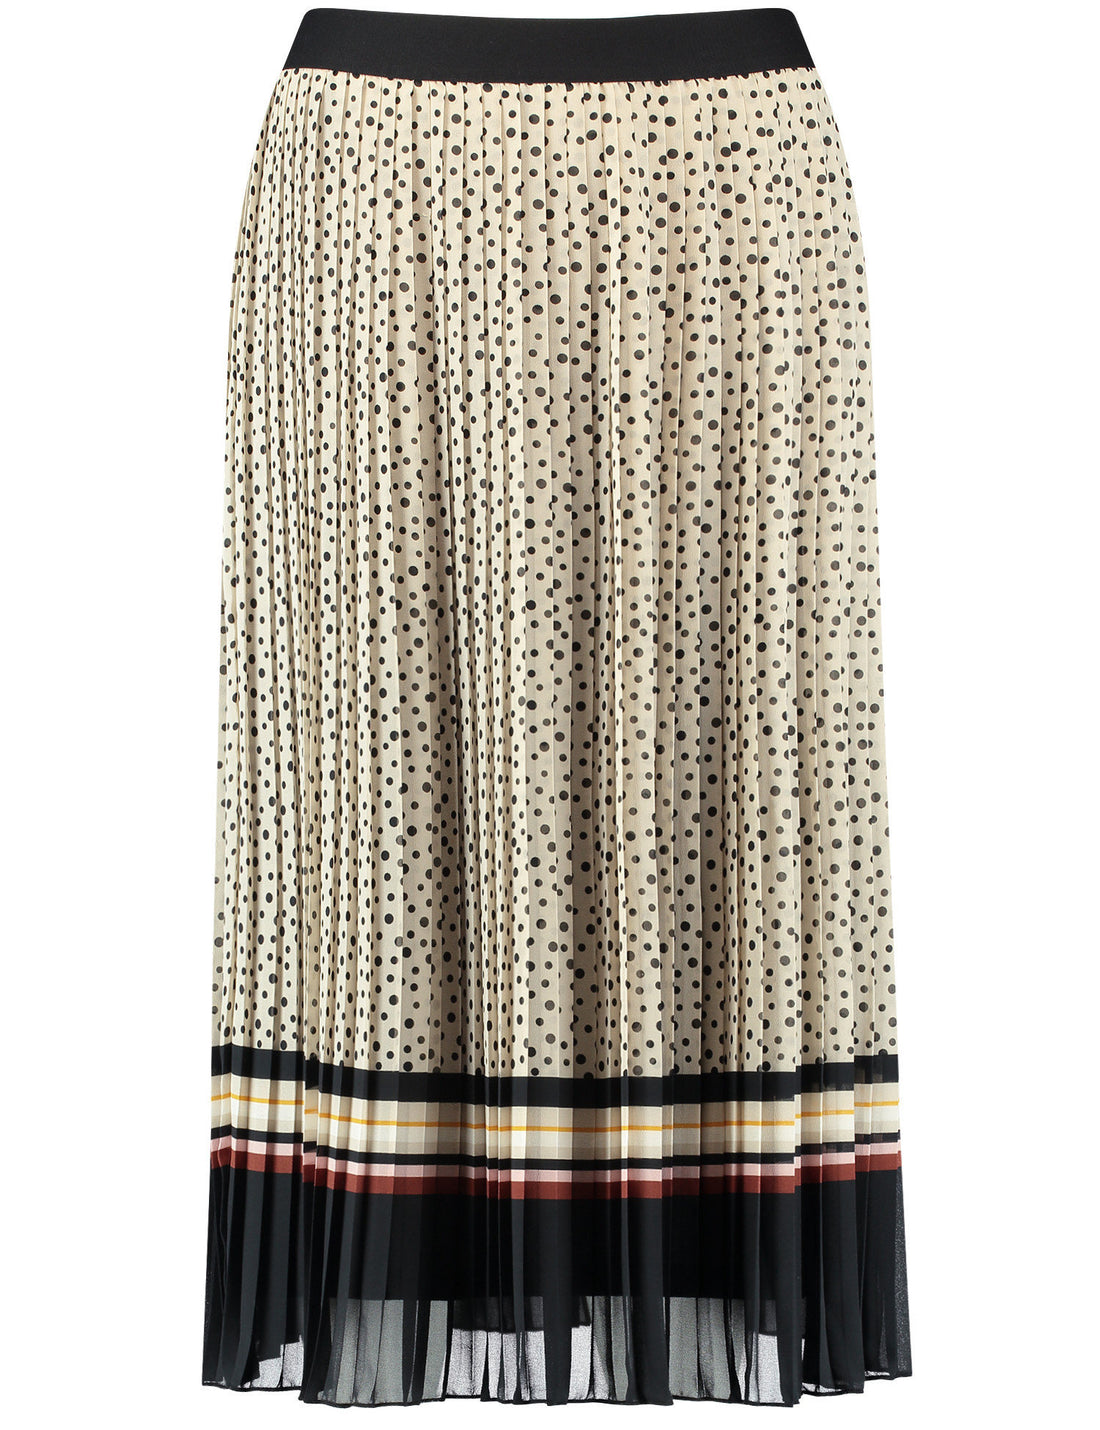 Polka Dot Pleated Skirt With An Elasticated Waistband_210004-31504_9018_02